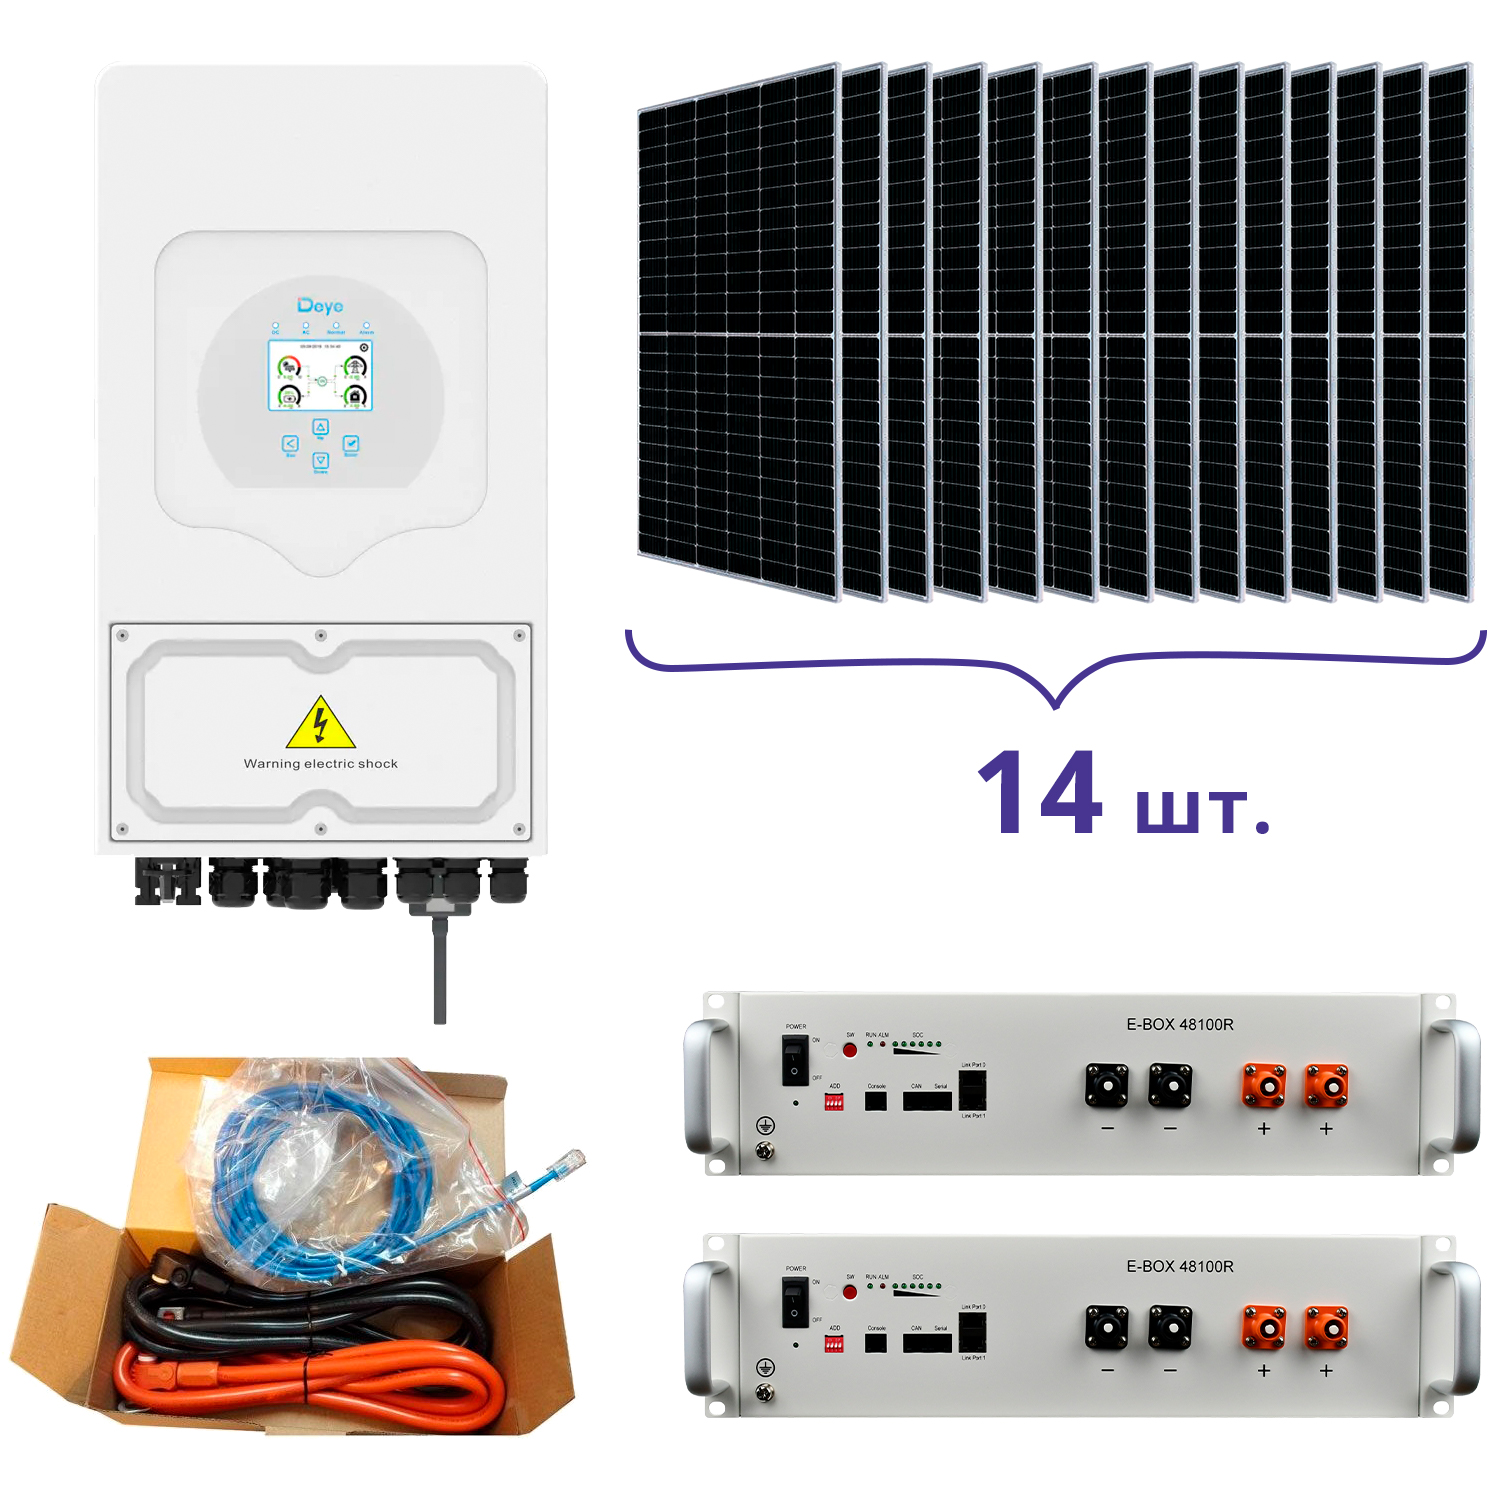 Deye SUN-5K-SG03LP1-EU+Pytes E-BOX-48100R-2шт.+Battery Cable Kit-1шт.+JA Solar JAM72S20-460/MR 460 Wp, Mono-14шт.+кабель